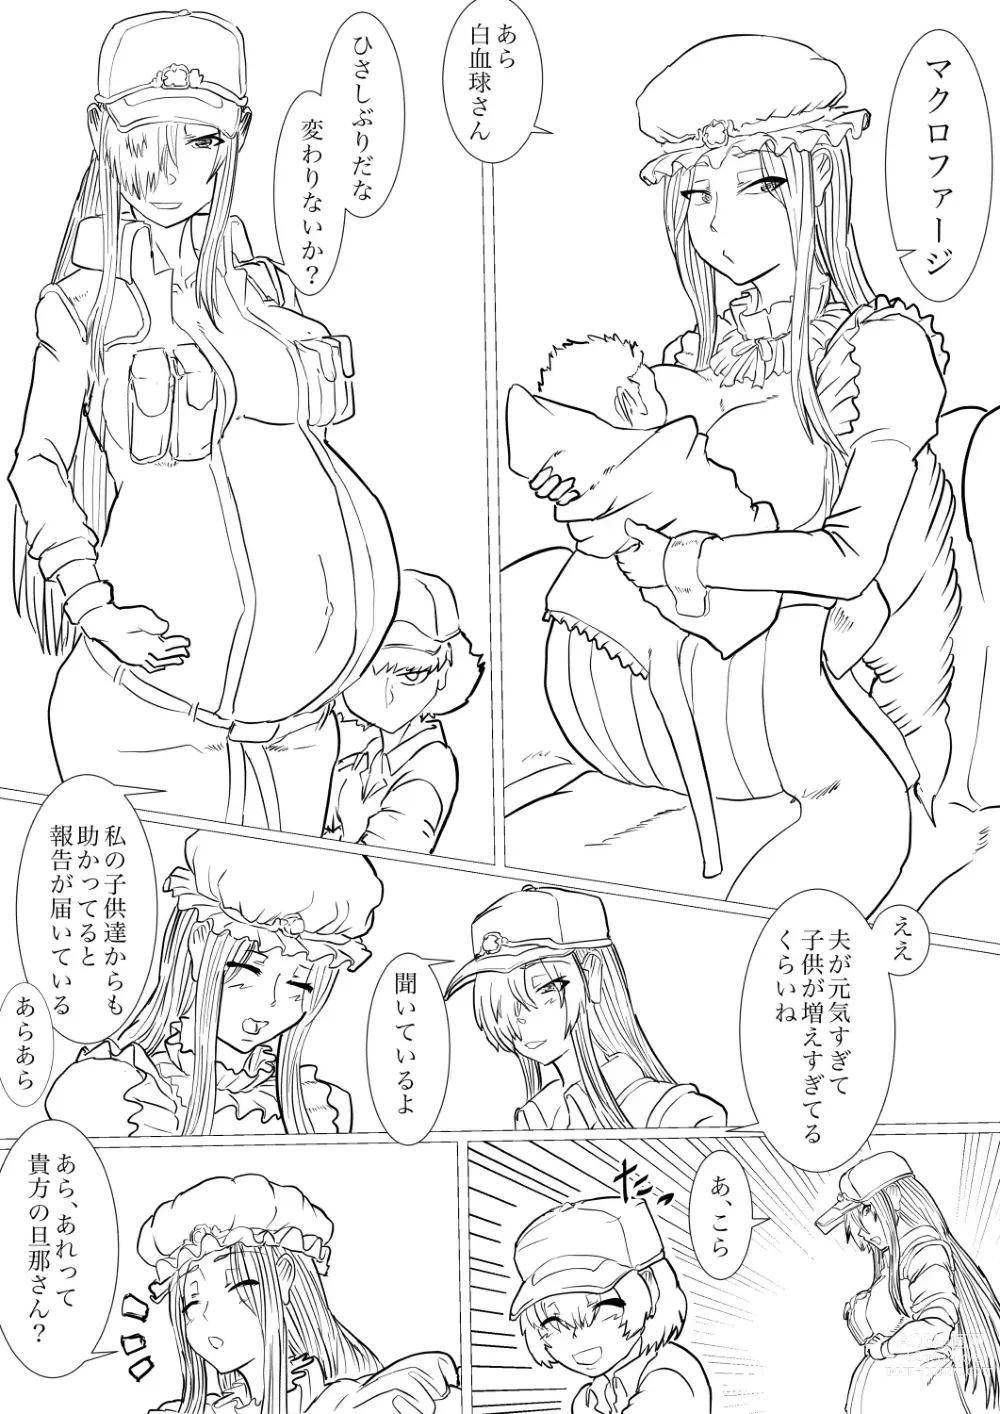 Page 45 of doujinshi Dai 1-ki chiryo-yo no kiki kosei